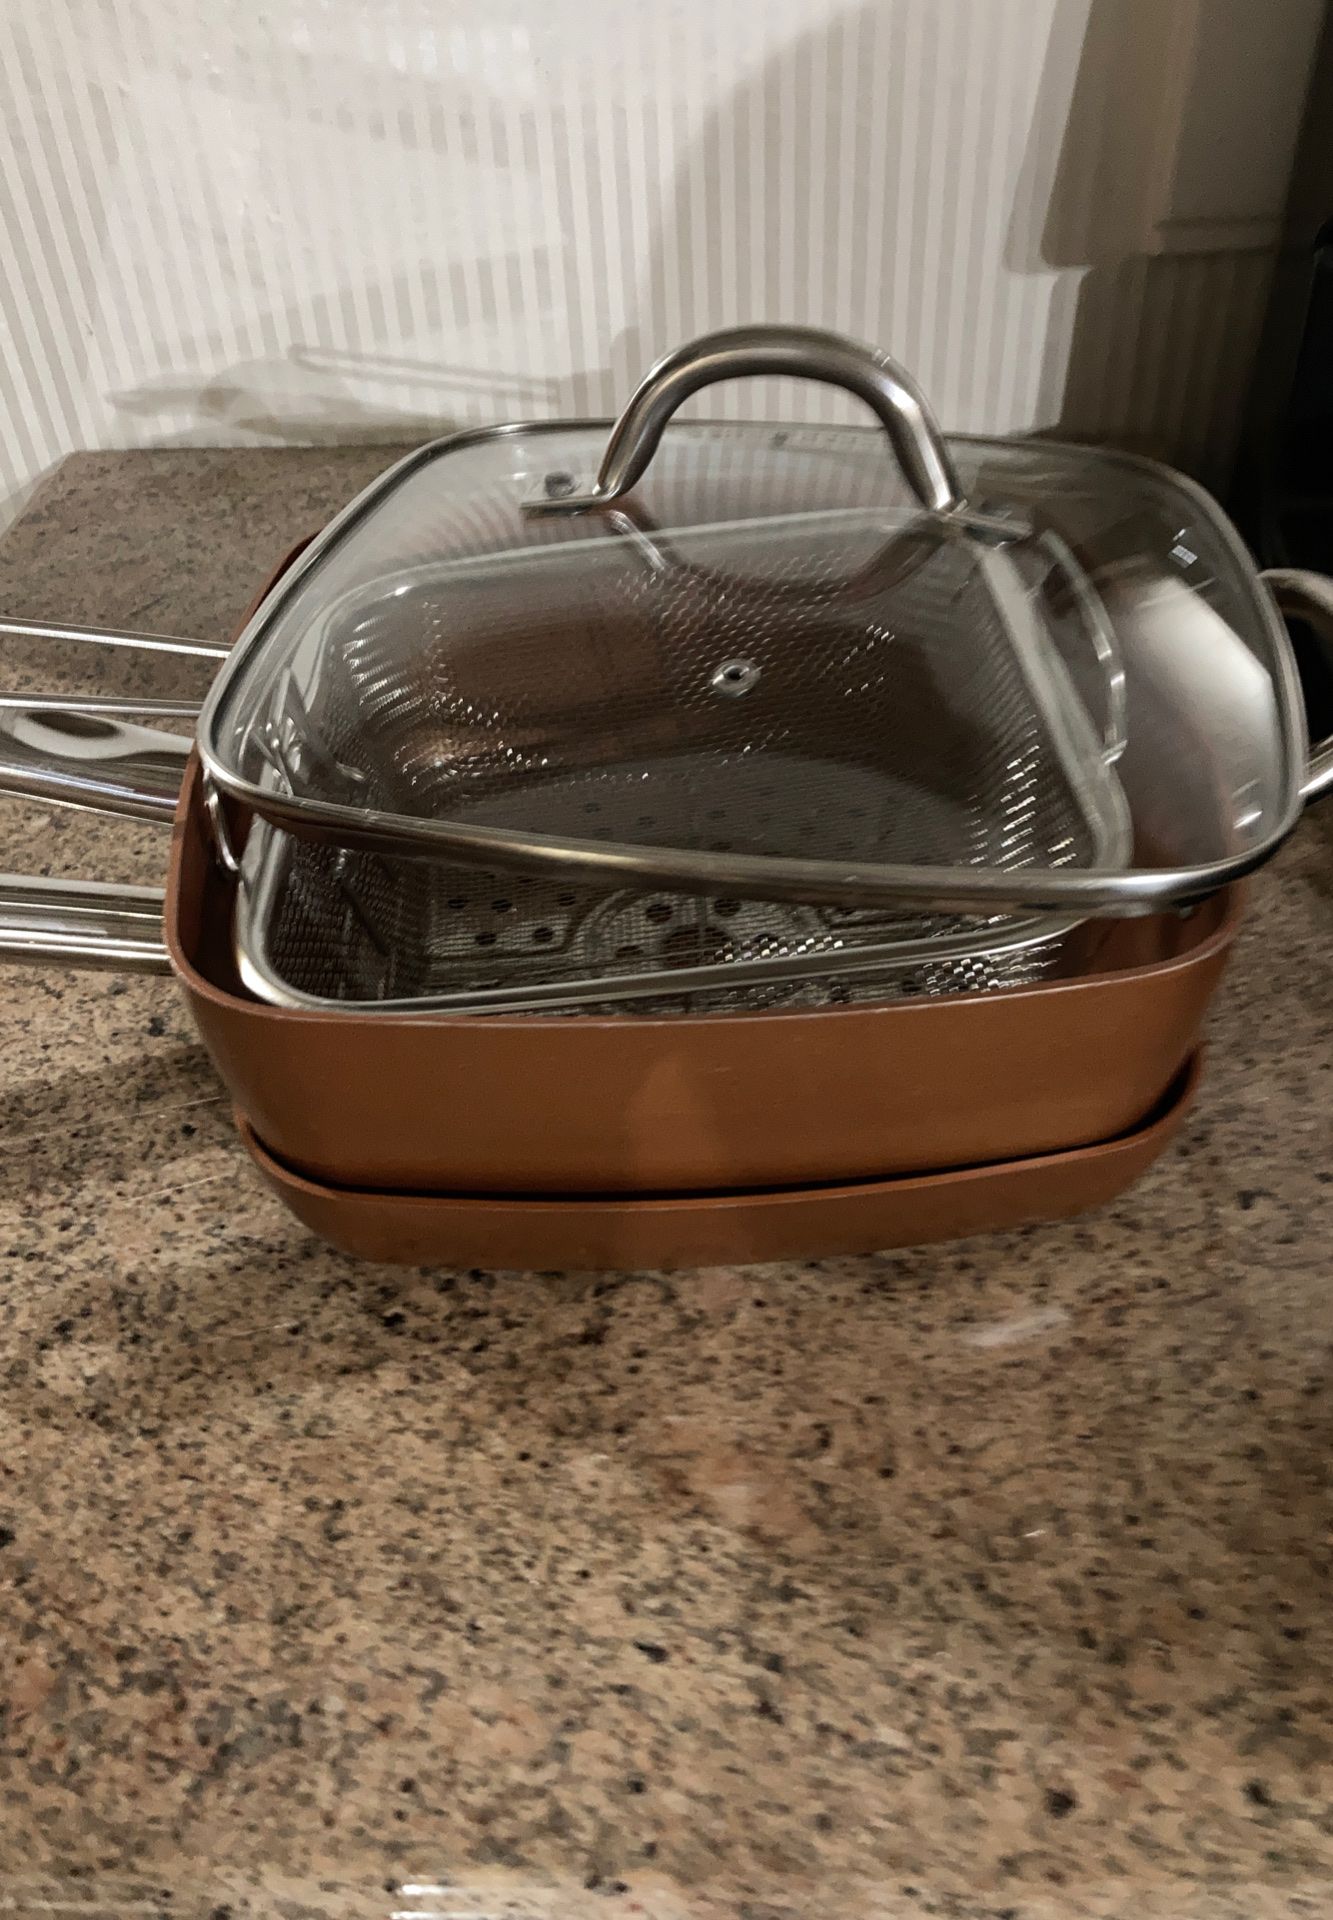 Copper Chef Cookware